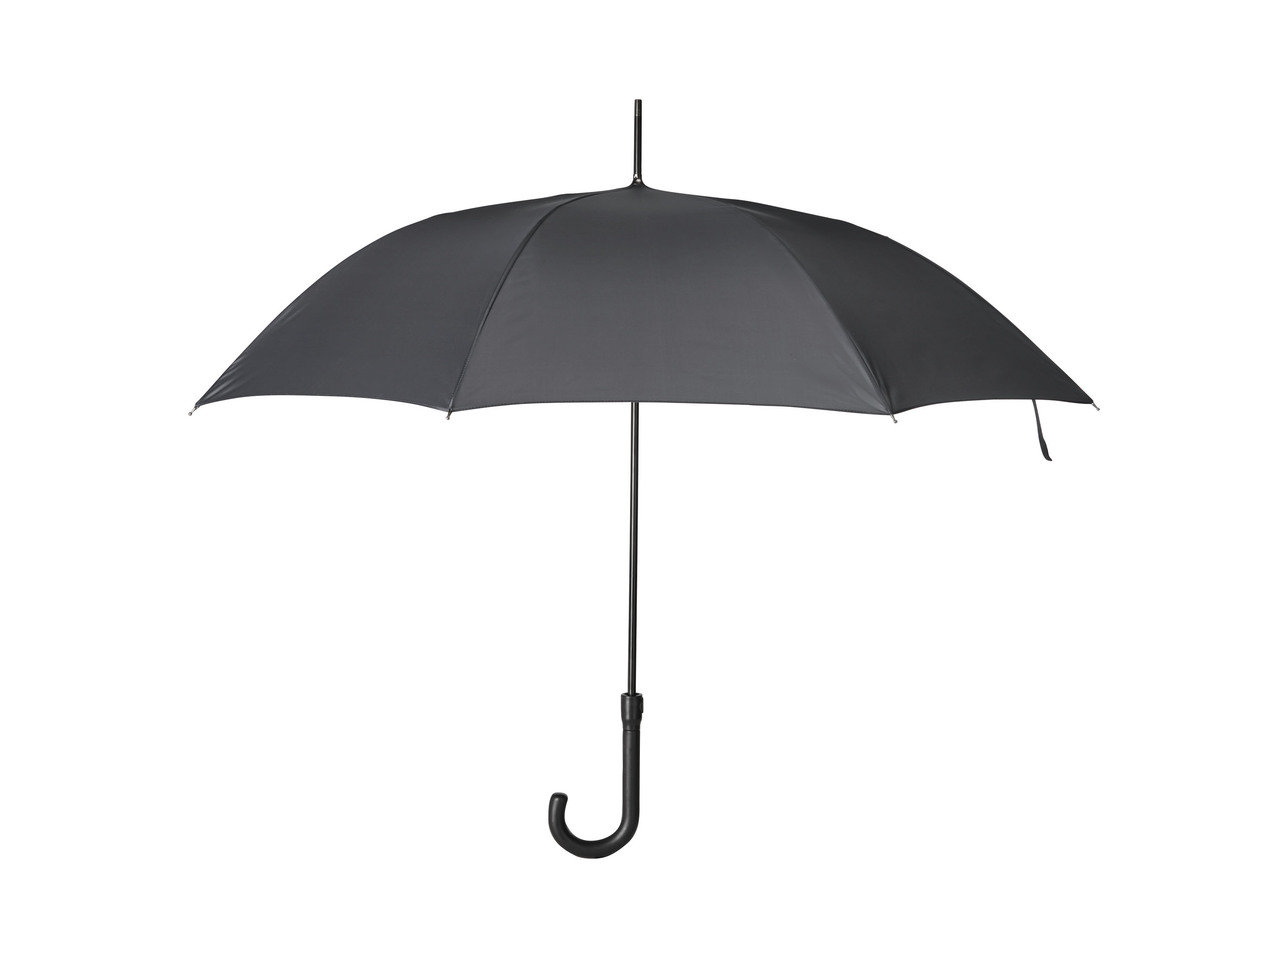 TOPMOVE(R) Guarda-chuva